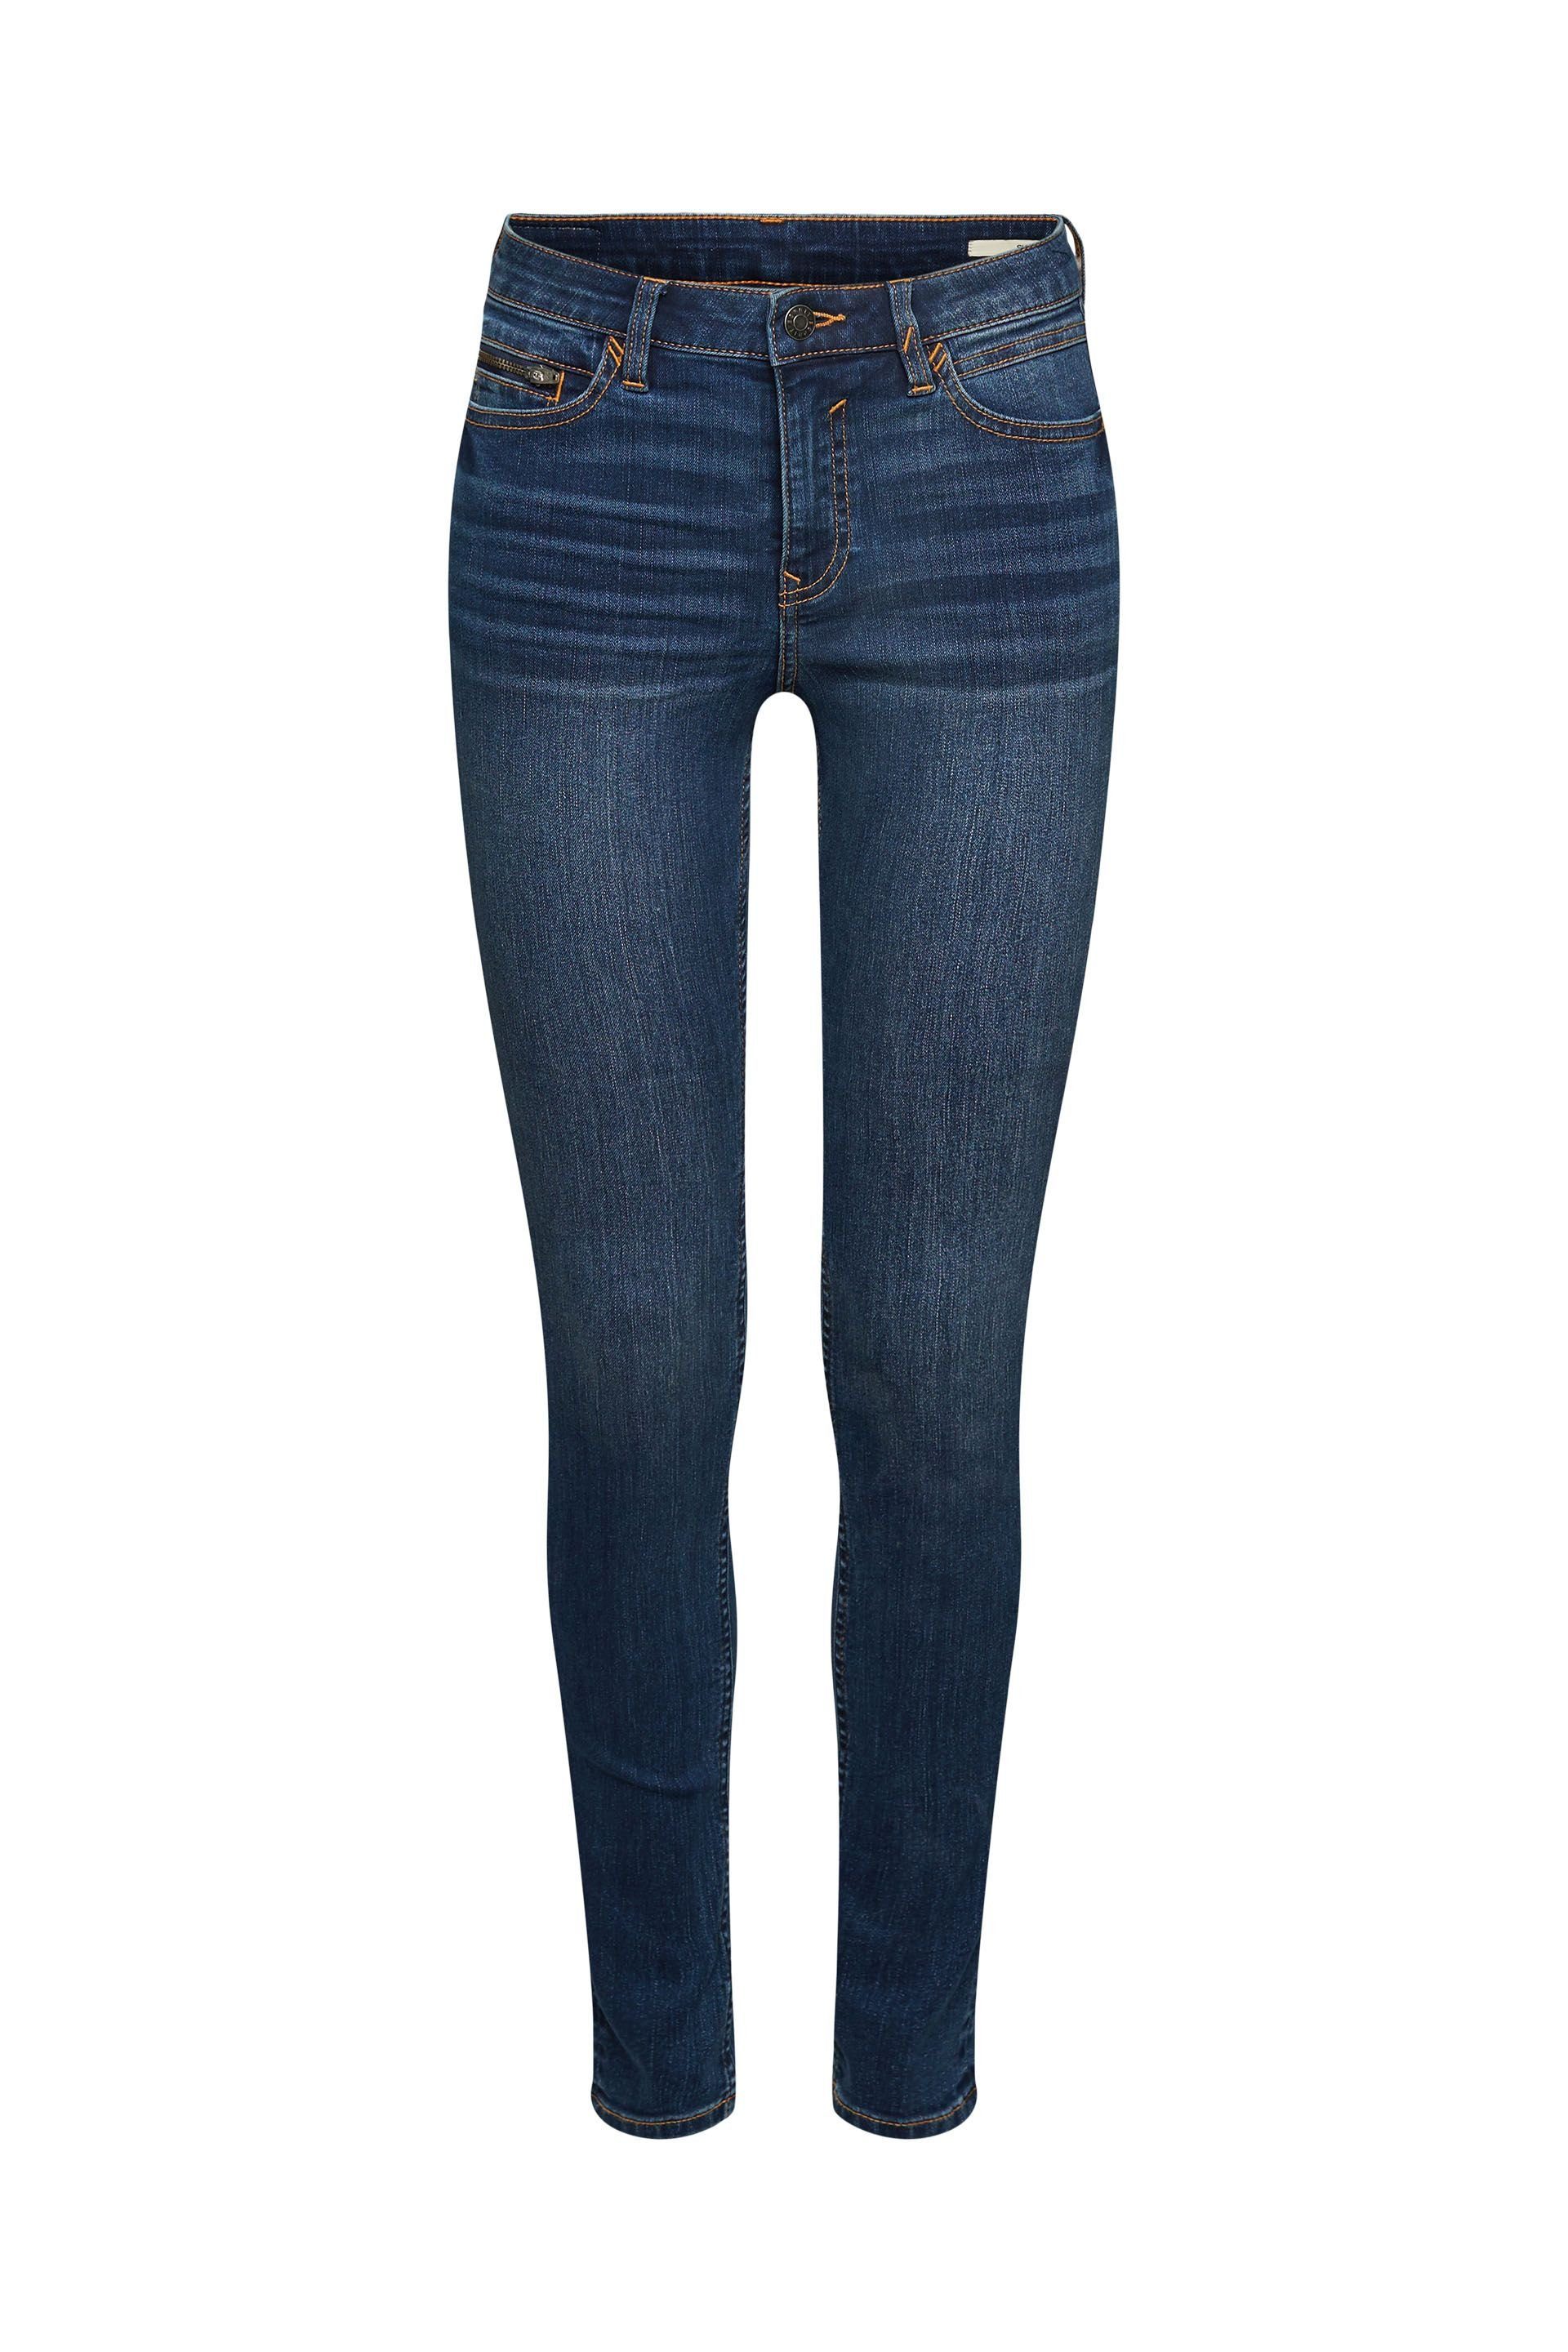 Esprit 5-Pocket-Jeans Skinny Fit Jeans blue dark washed